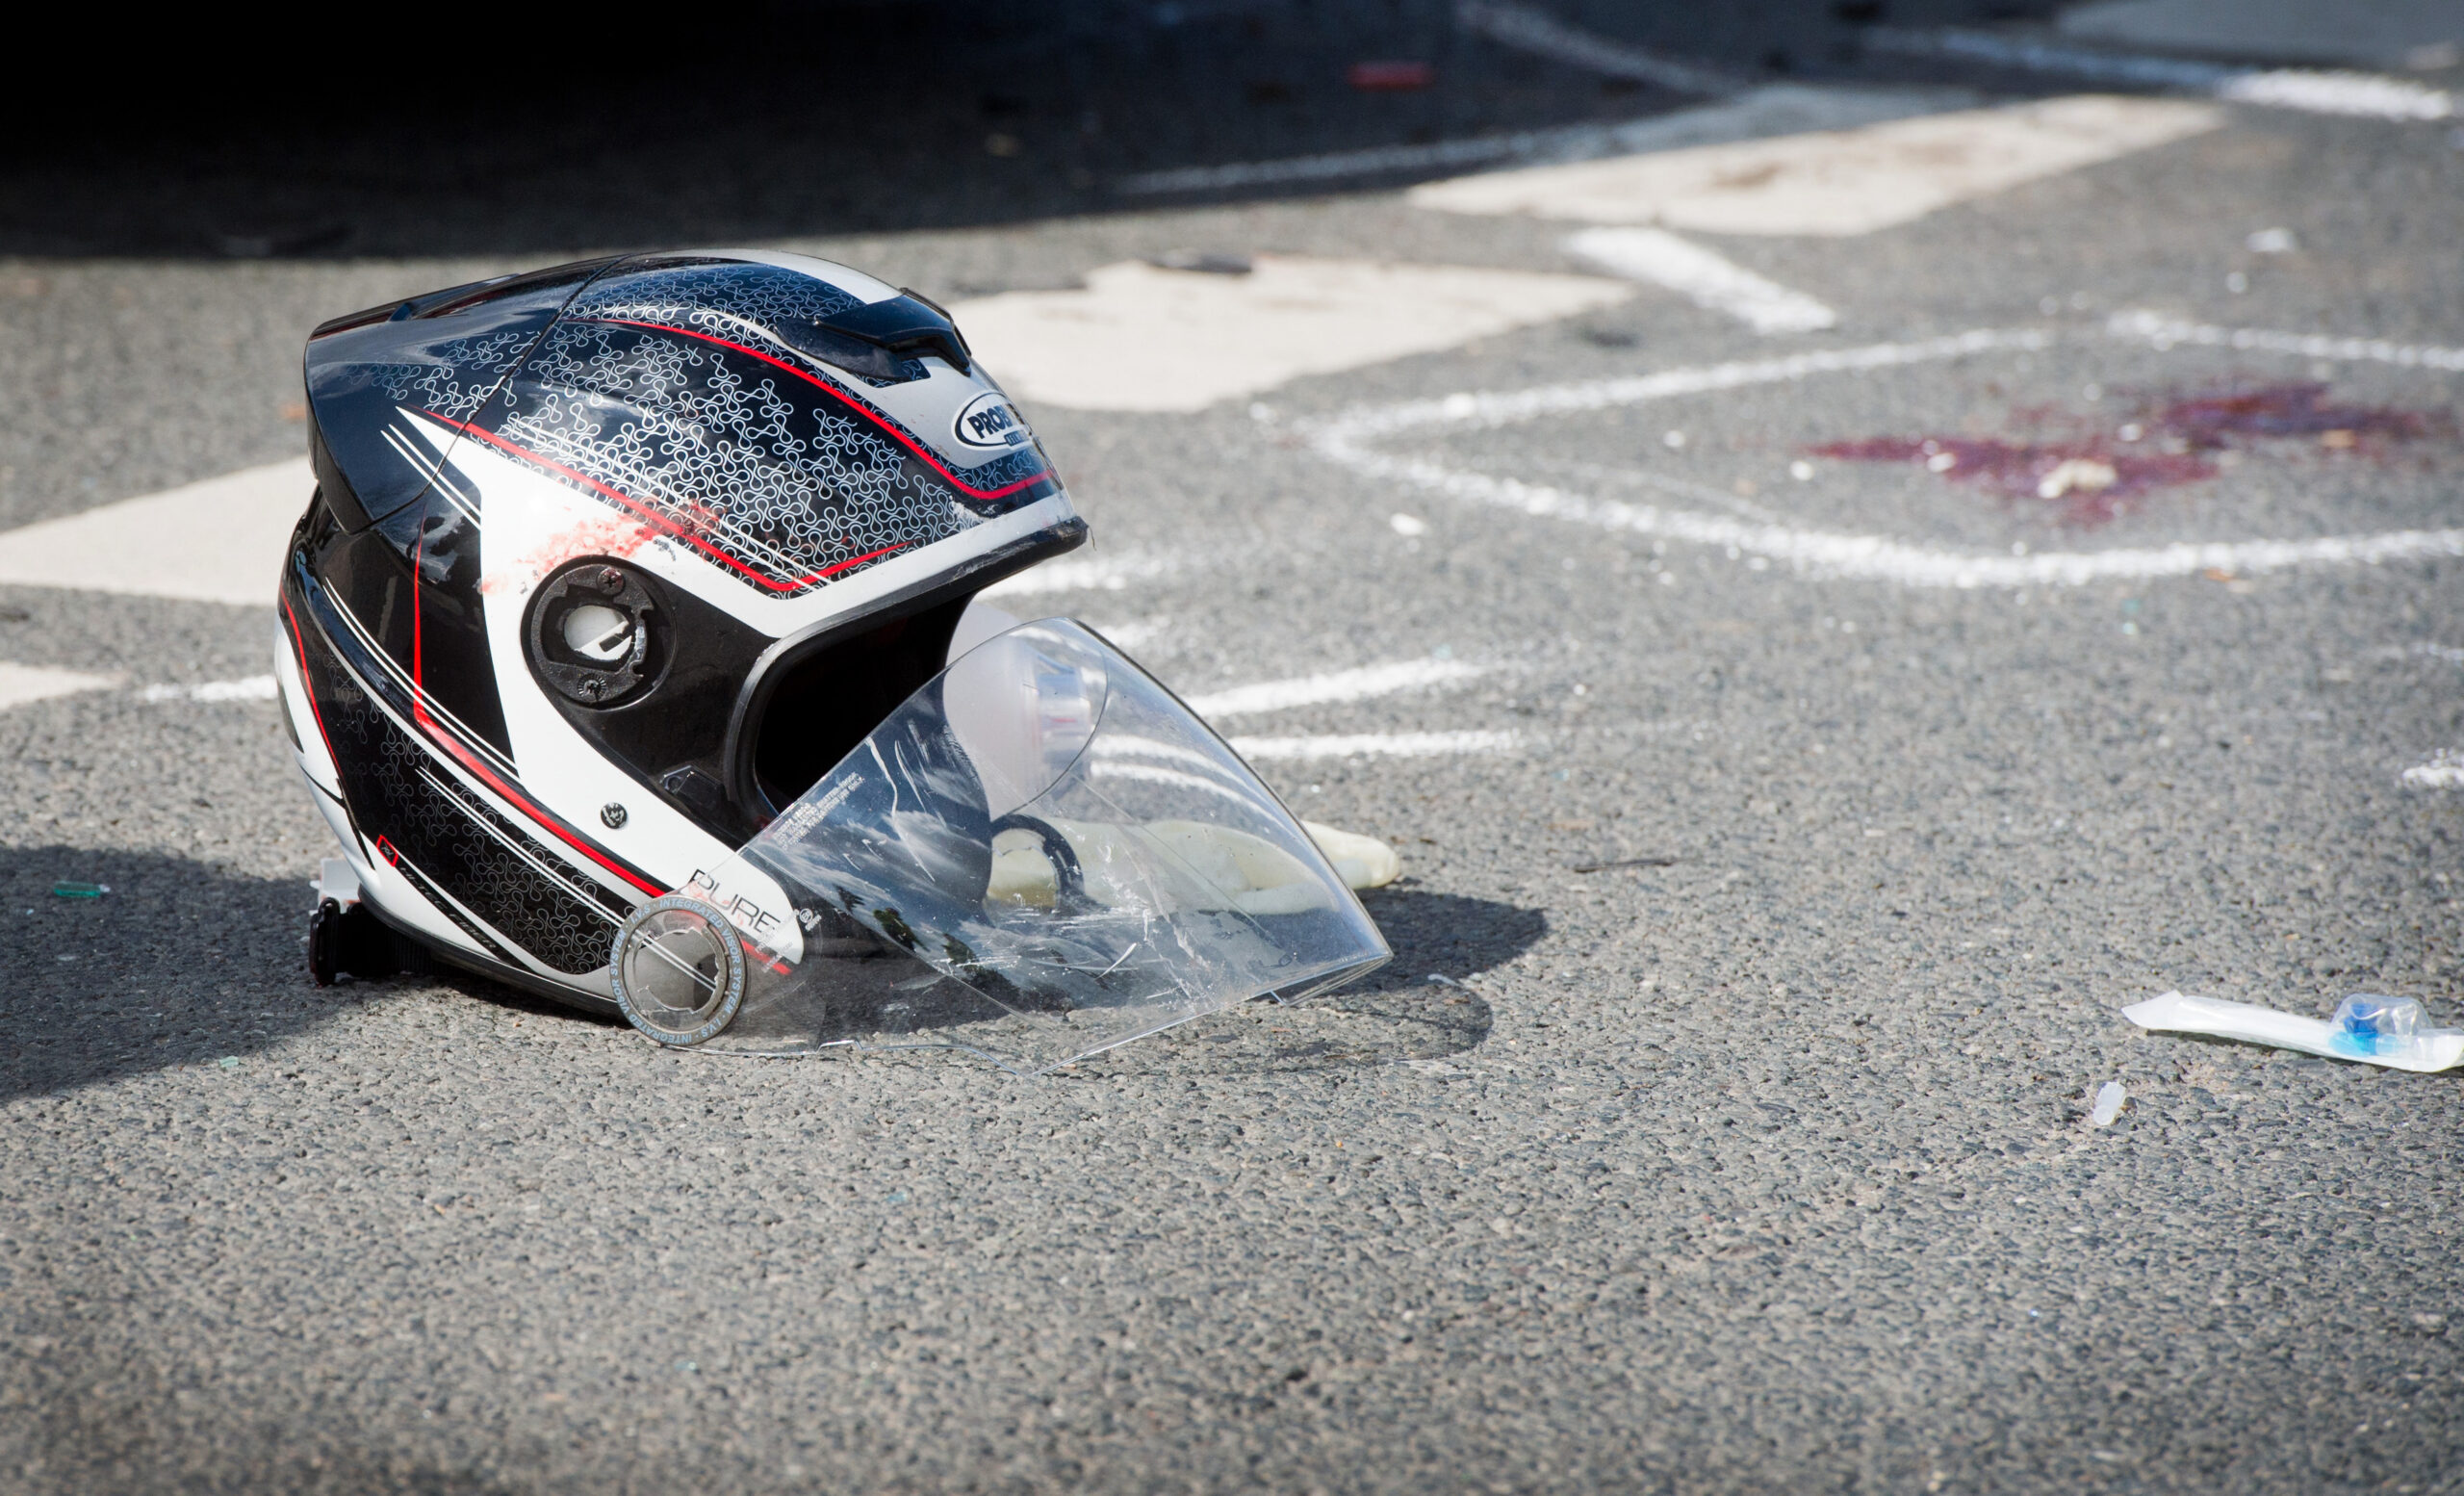 Ein beschädigter Motorradhelm liegt nach einem schweren Unfall zwischen einem Motorrad und einem Auto auf einer Straße. (Symbolfoto).